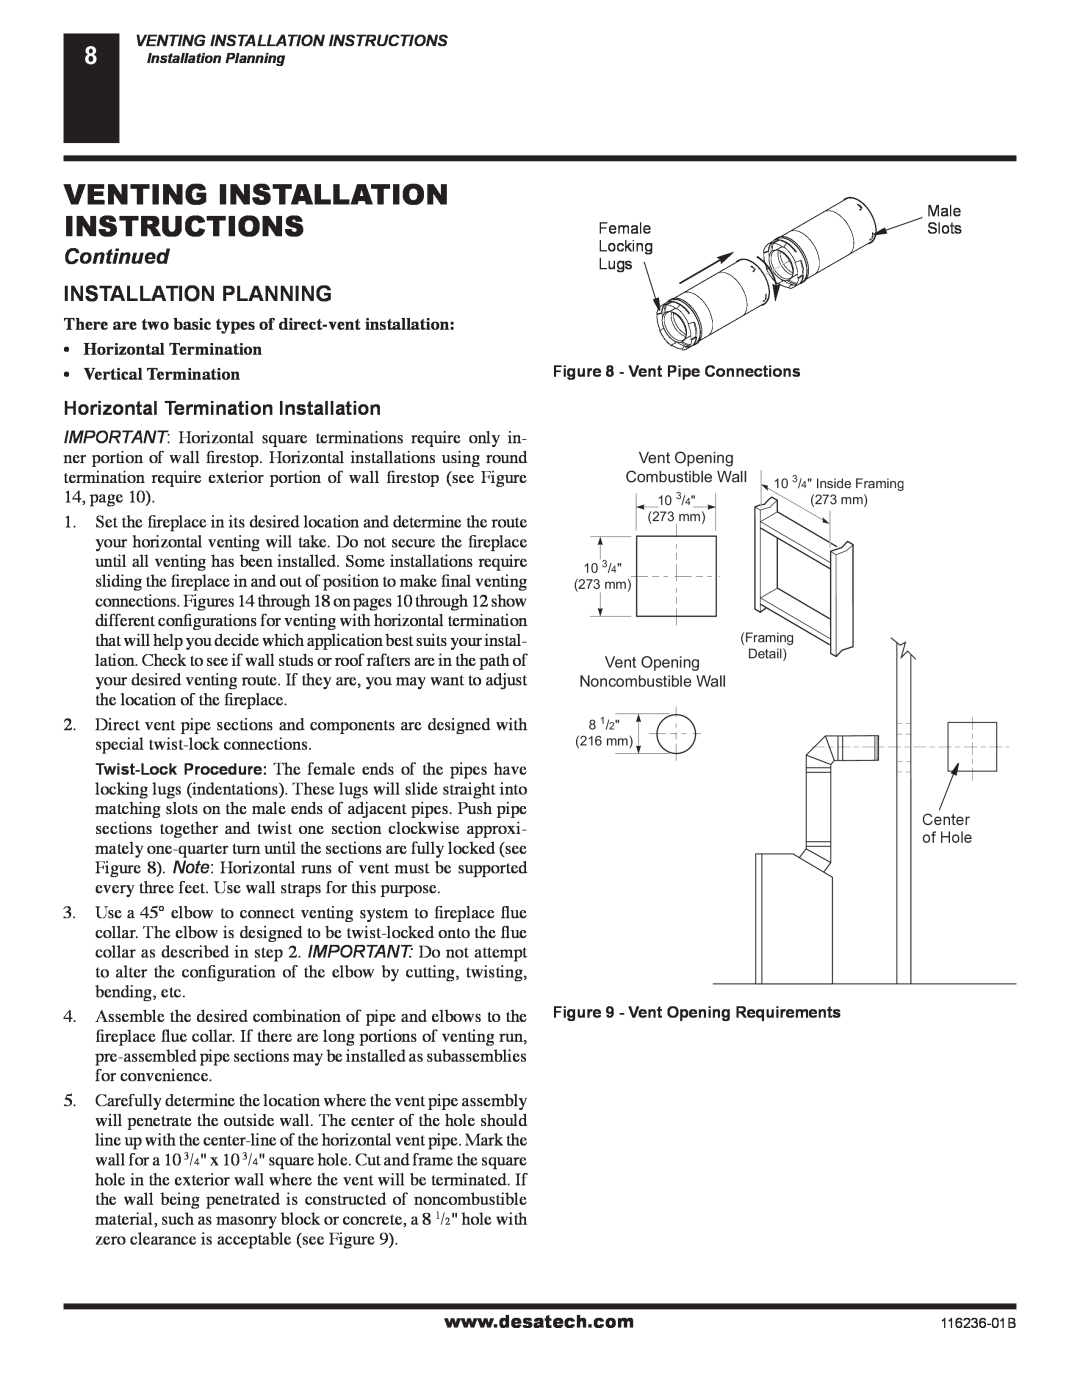 Desa (V)VC42P SERIES Installation Planning, Horizontal Termination Installation, Venting Installation Instructions 